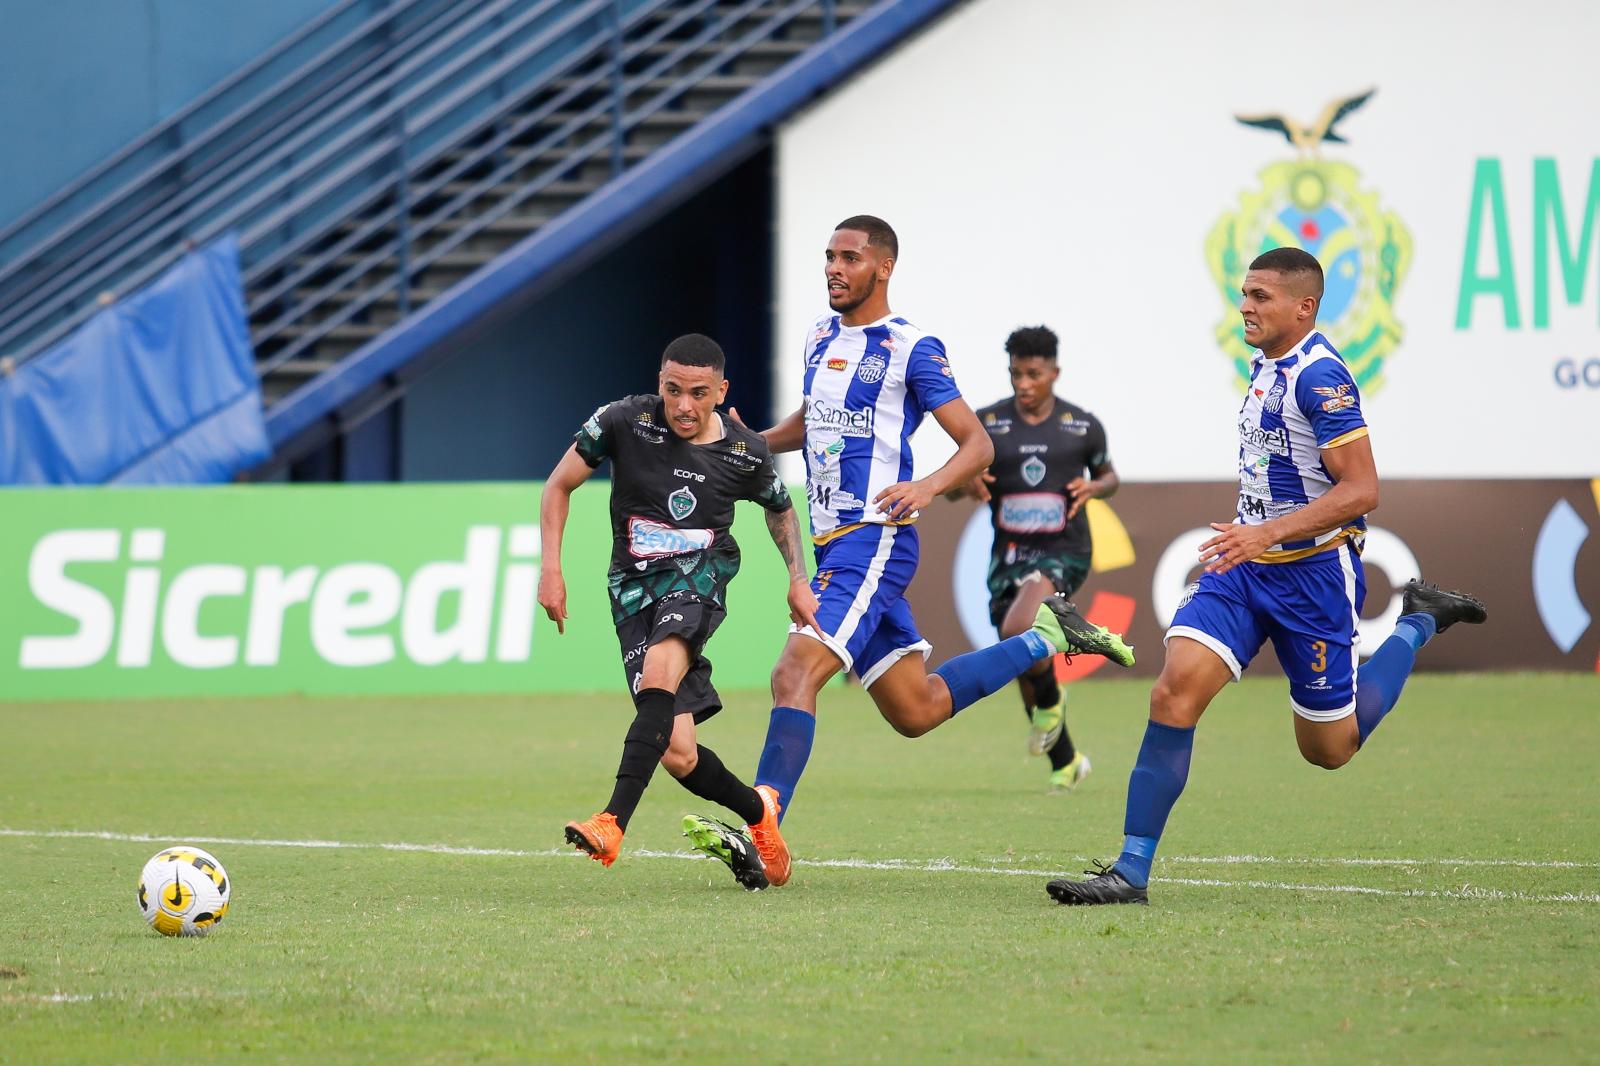 Campeão e líder de assistências em 2022, Thiaguinho retorna ao Manaus FC